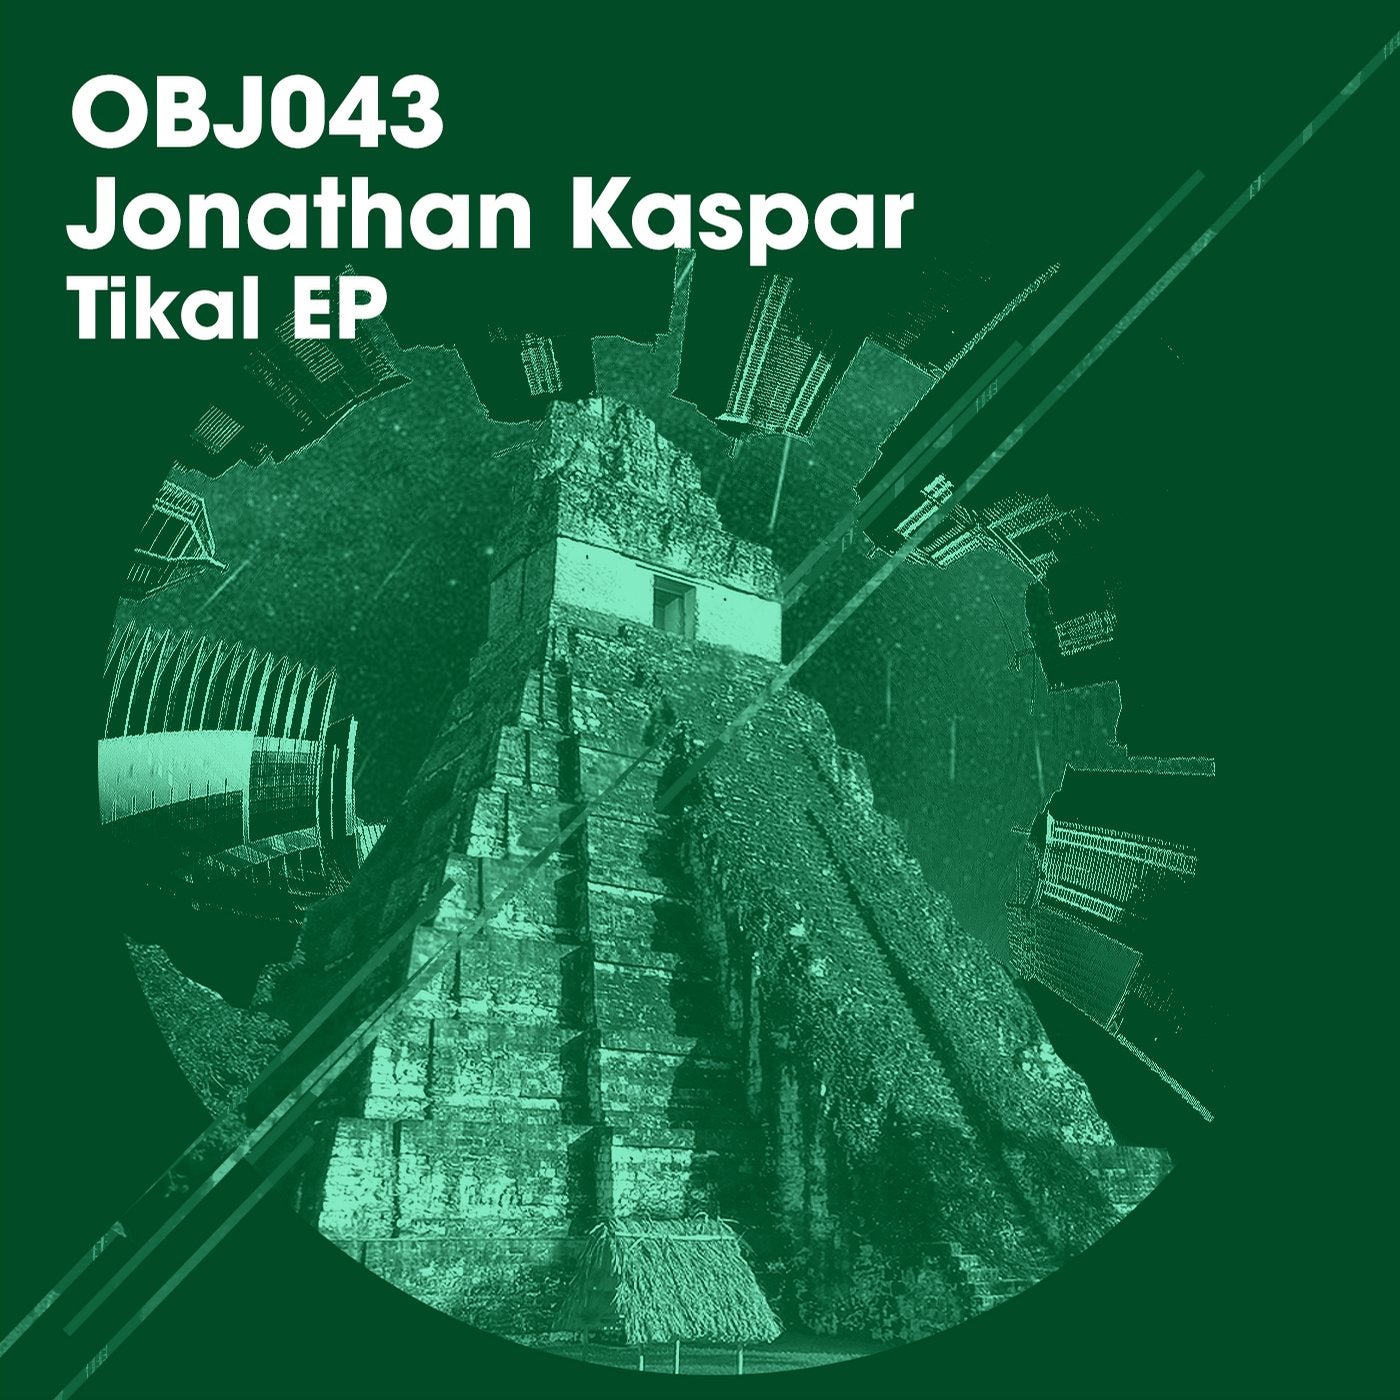 Tikal EP